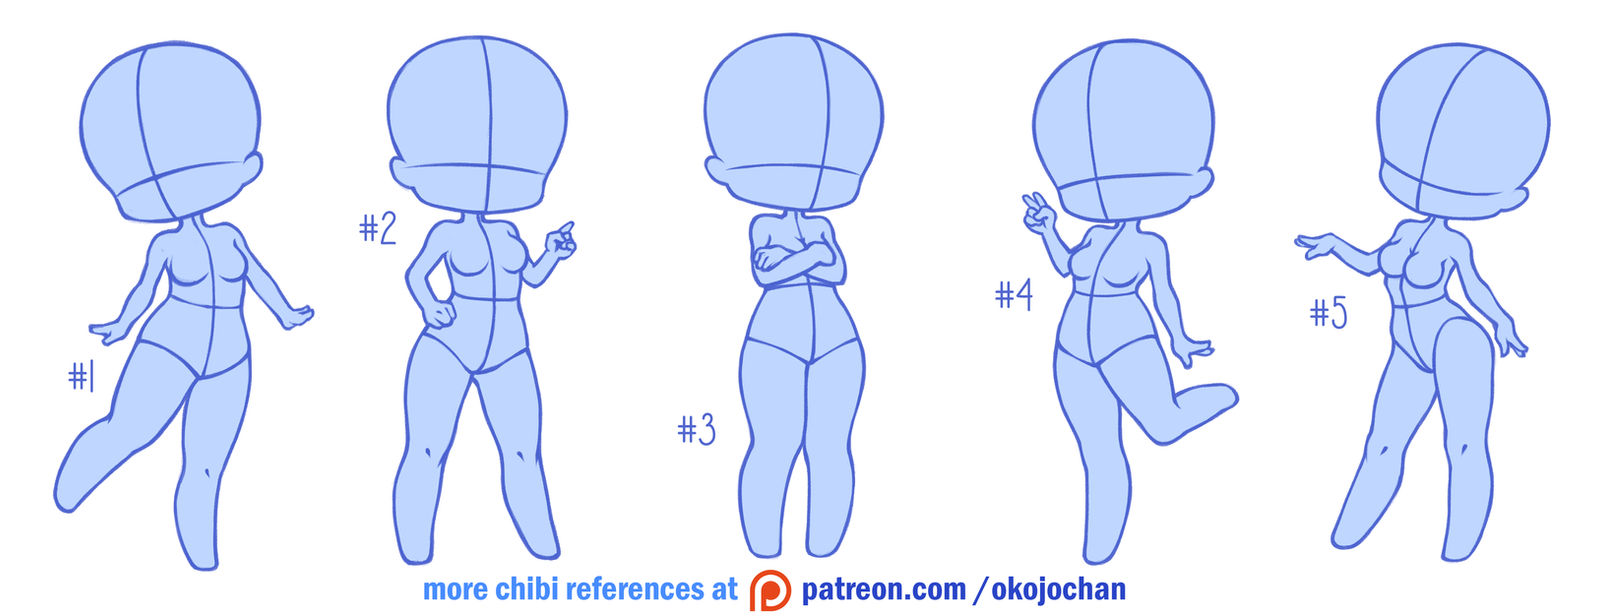 Chibi Poses Reference (Chibi Base Set #6) By Nukababe On Deviantart